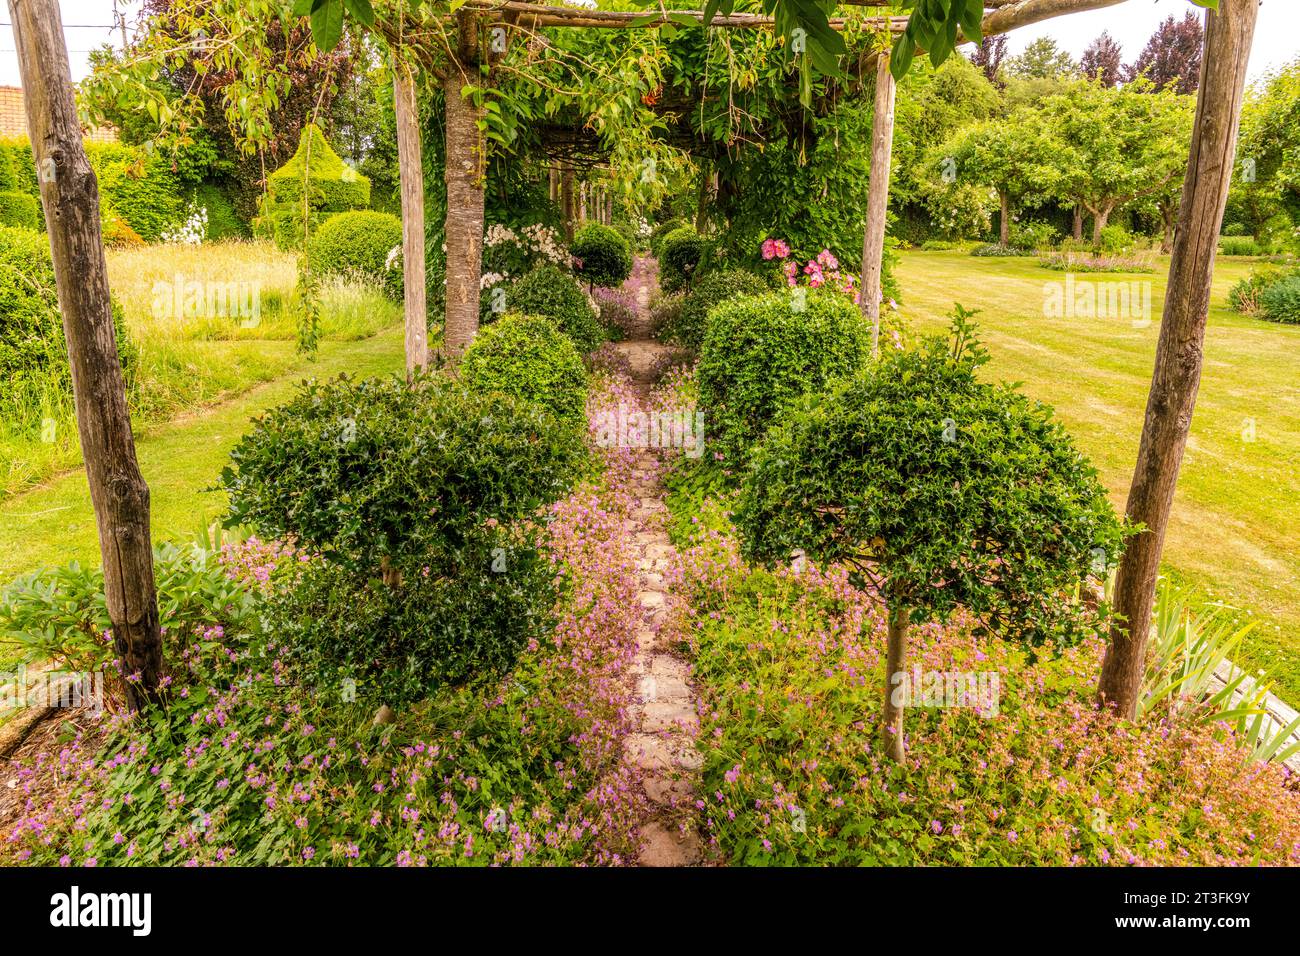 France, Somme, Maizicourt, Les jardins de Maizicourt, French garden, English garden, Contemporary garden, Vegetable garden Stock Photo